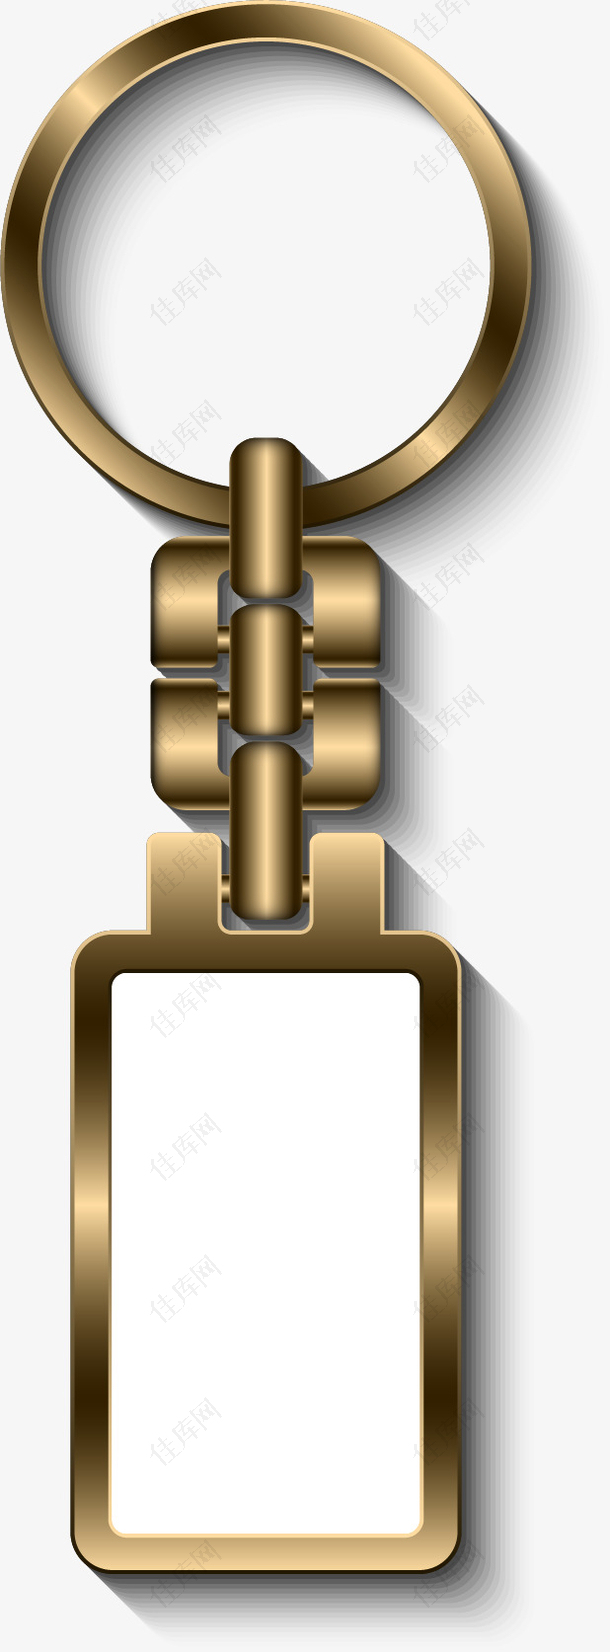 矢量手绘金属钥匙链